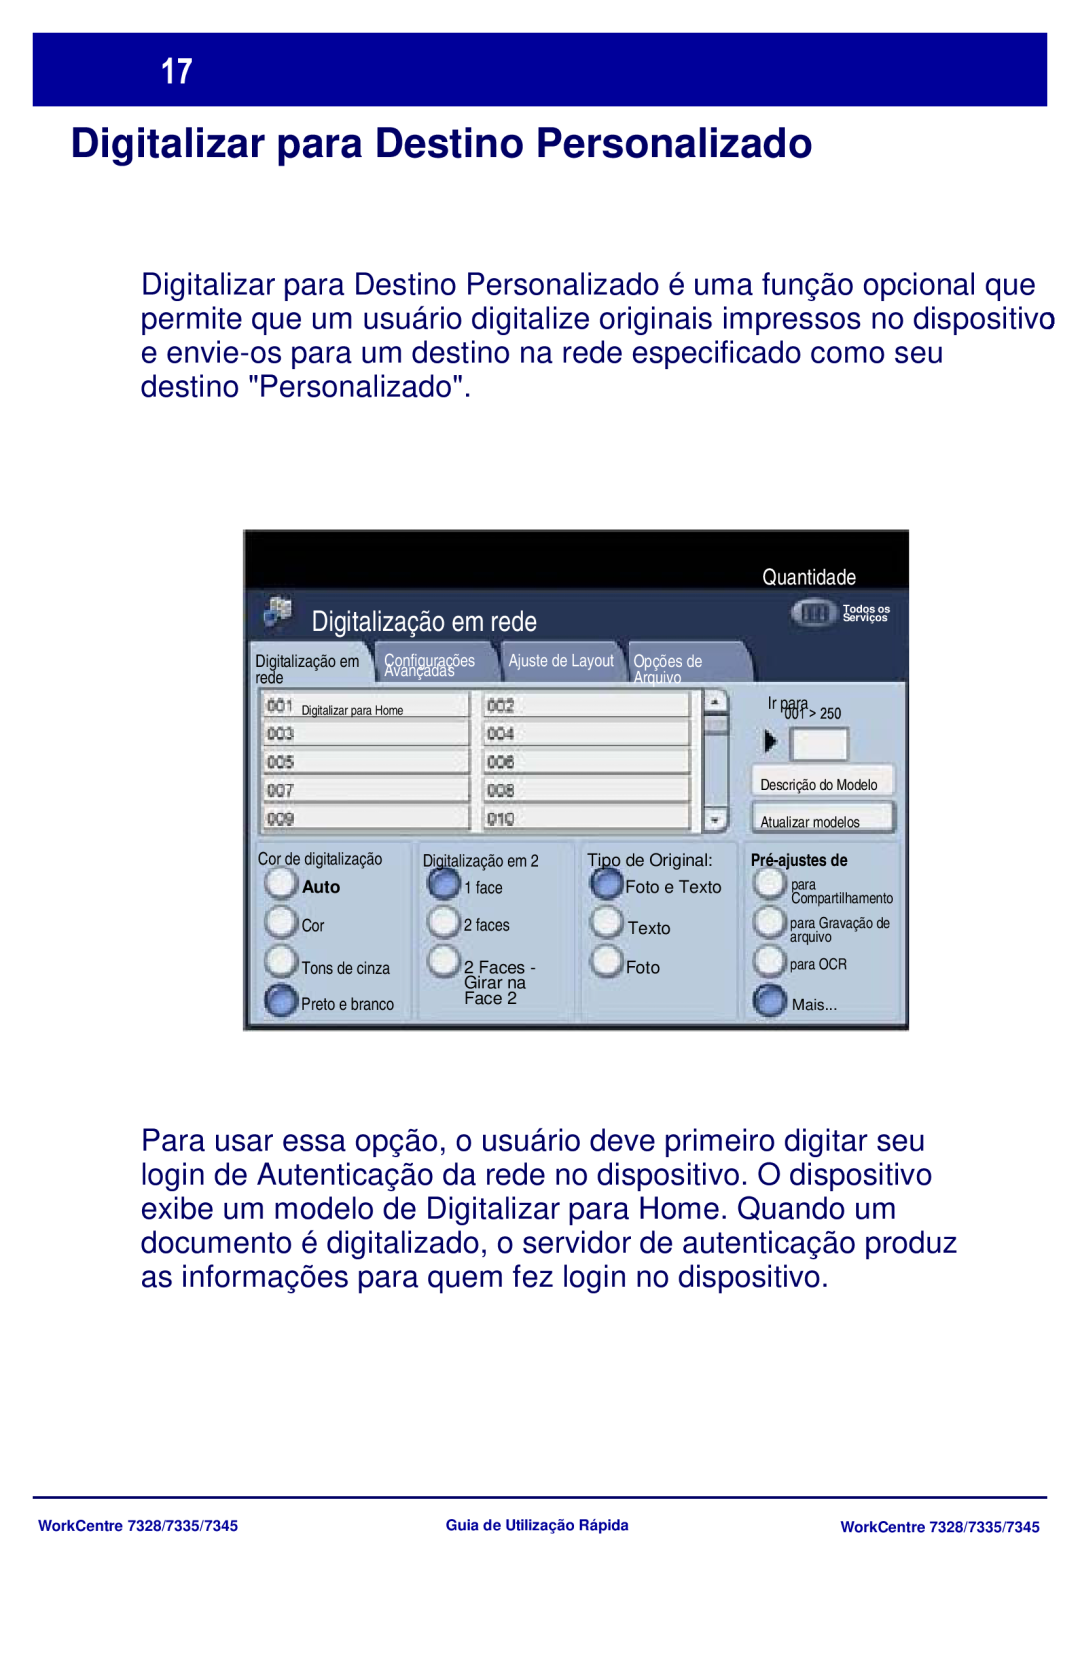 Xerox 7335, 7328, 7345 manual Digitalizar para Destino Personalizado, Digitalização em rede 